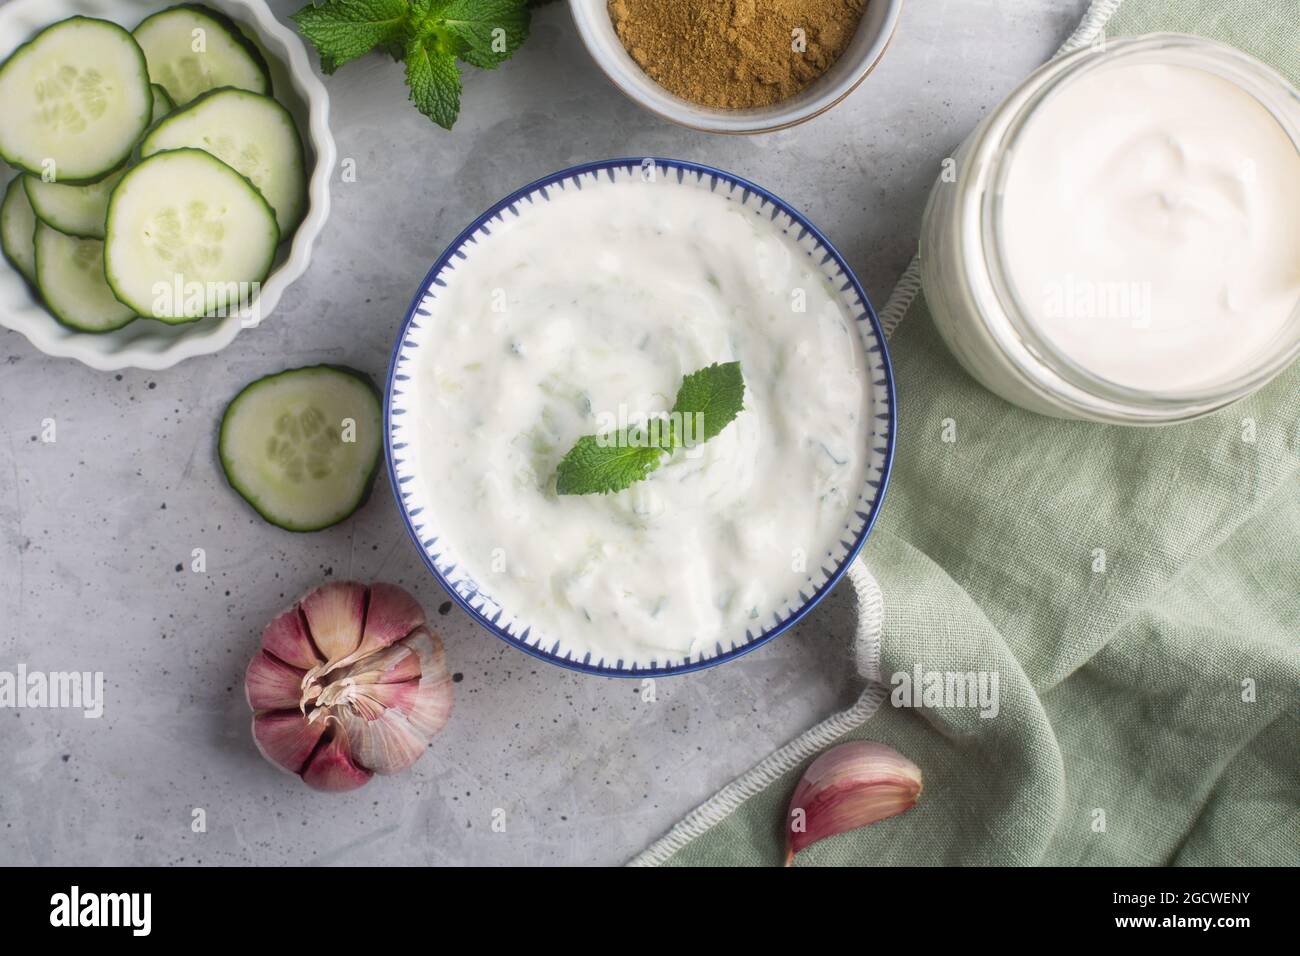 Tradizionale raita indiana con cetriolo, yogurt greco e coriandolo, vista dall'alto, sfondo in cemento Foto Stock